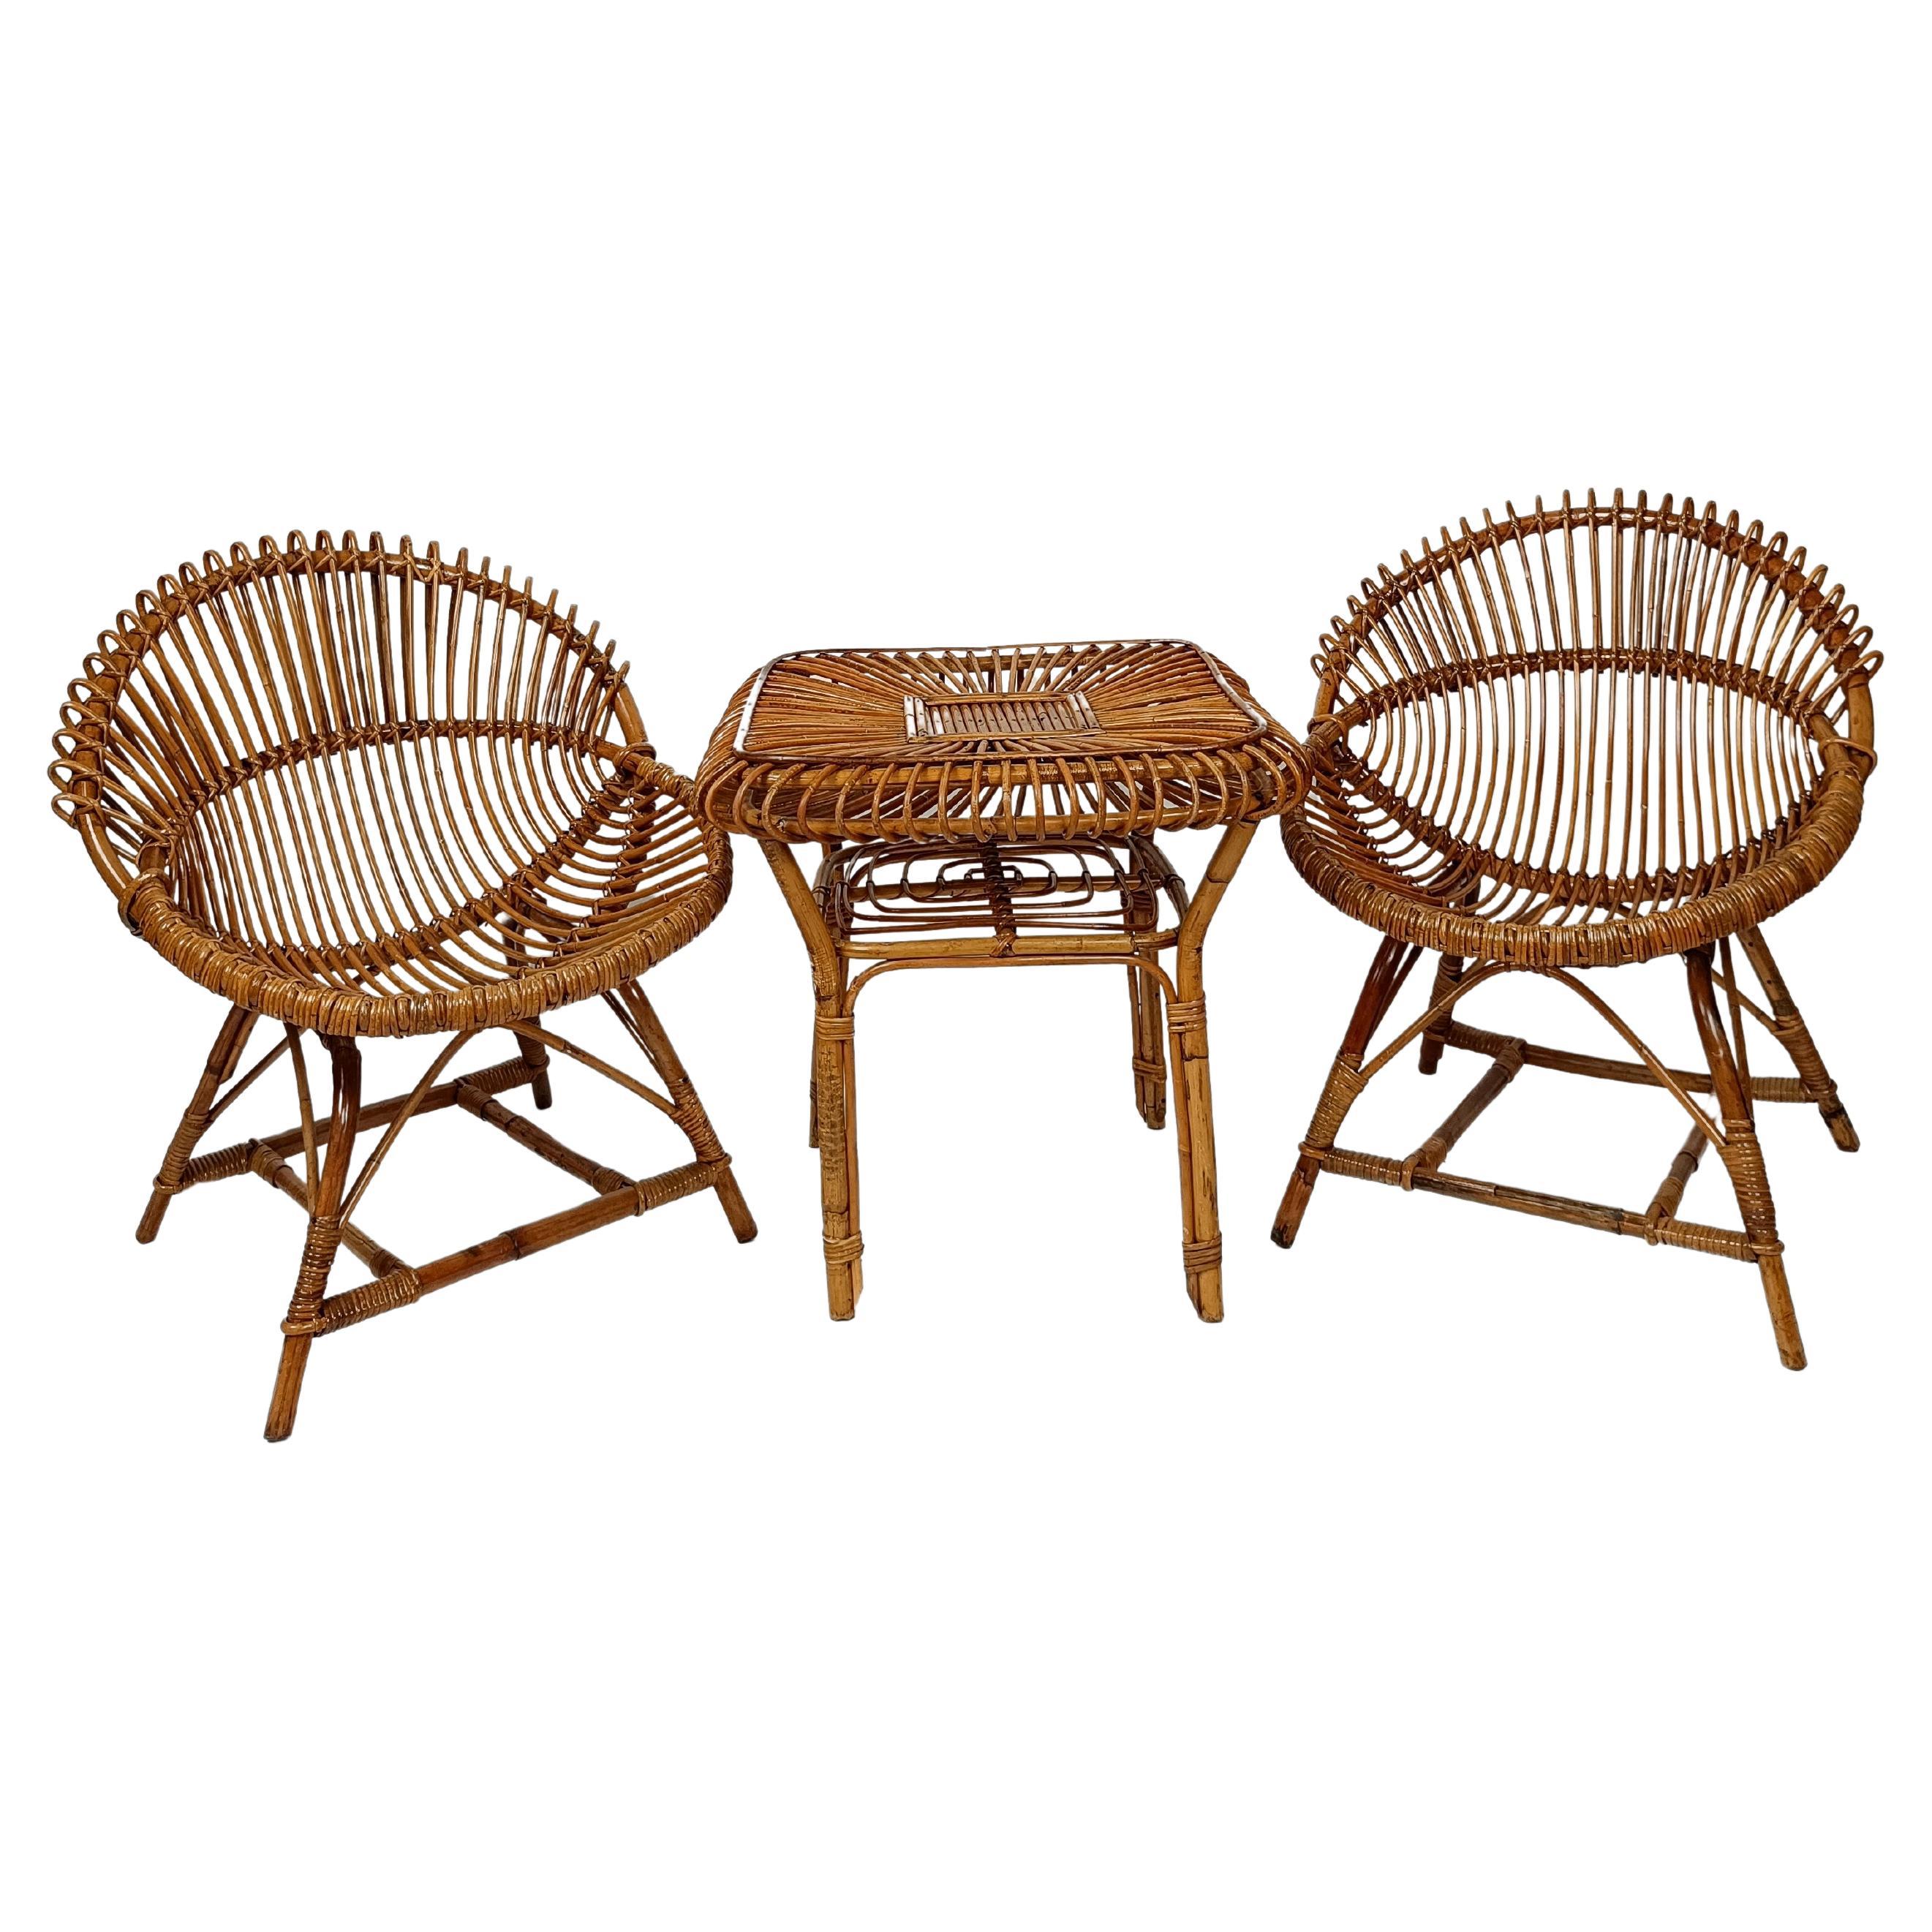 Set aus 2 schalenförmigen Sesseln aus Schilfrohr und Rattan mit Couchtisch, 1960er Jahre